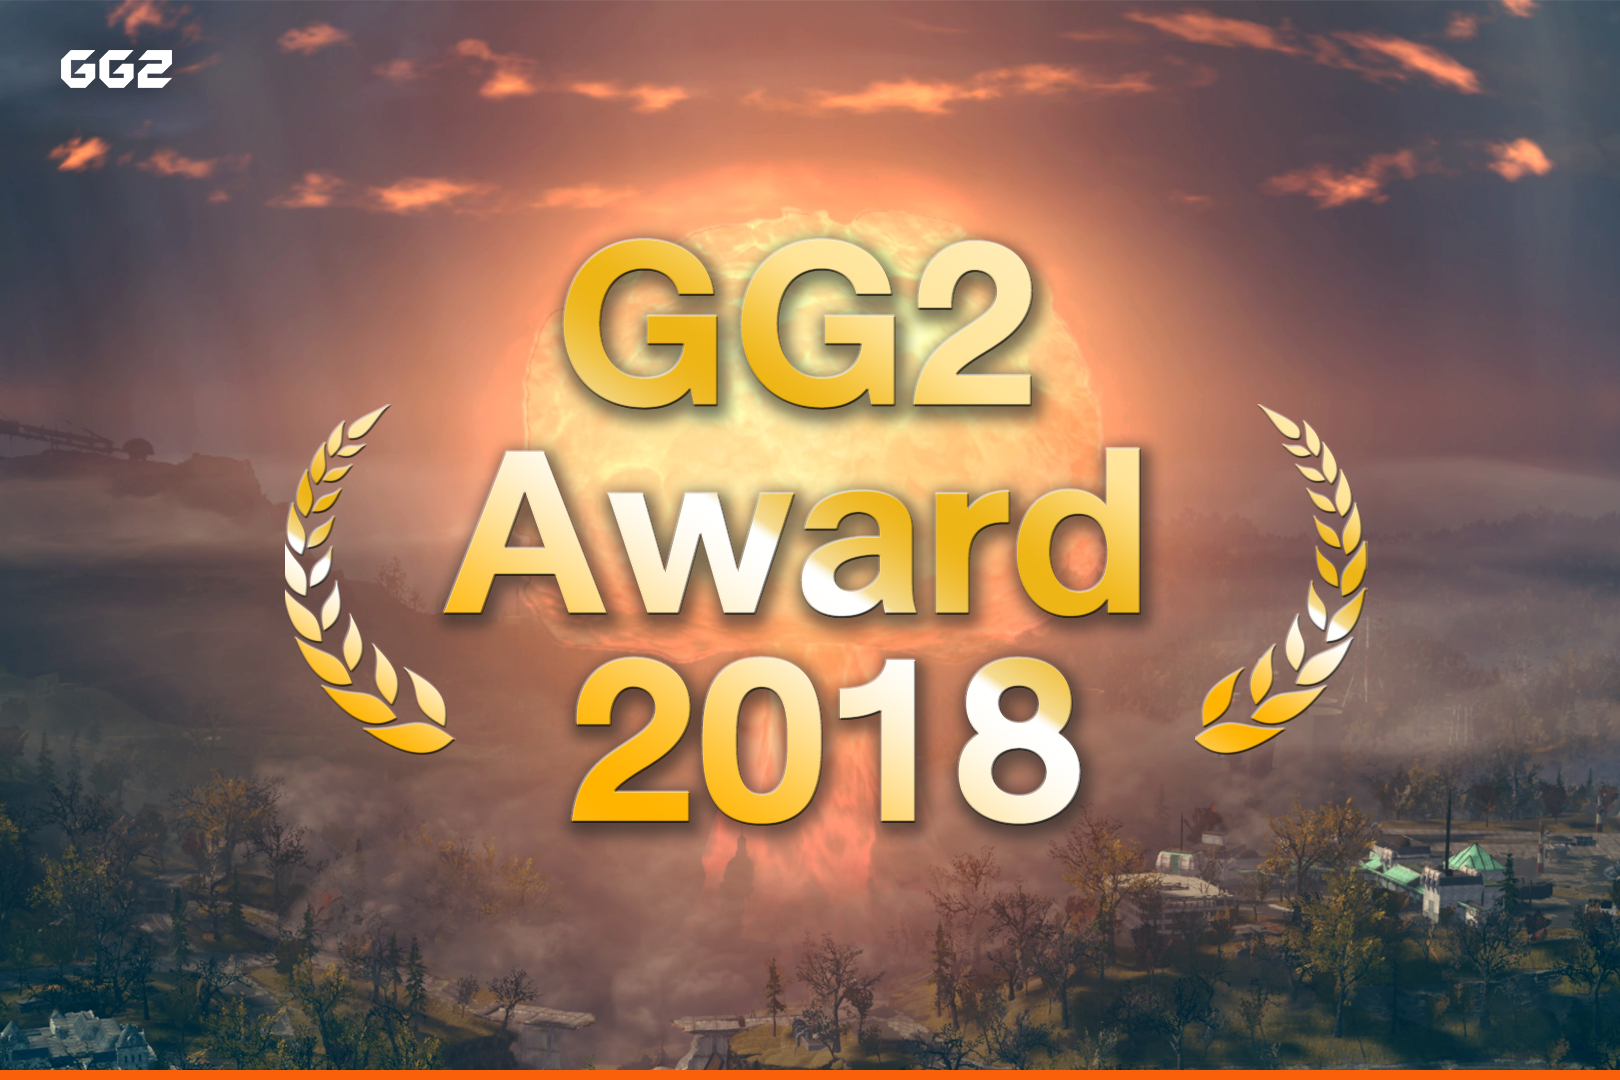 GG2 Award 2018